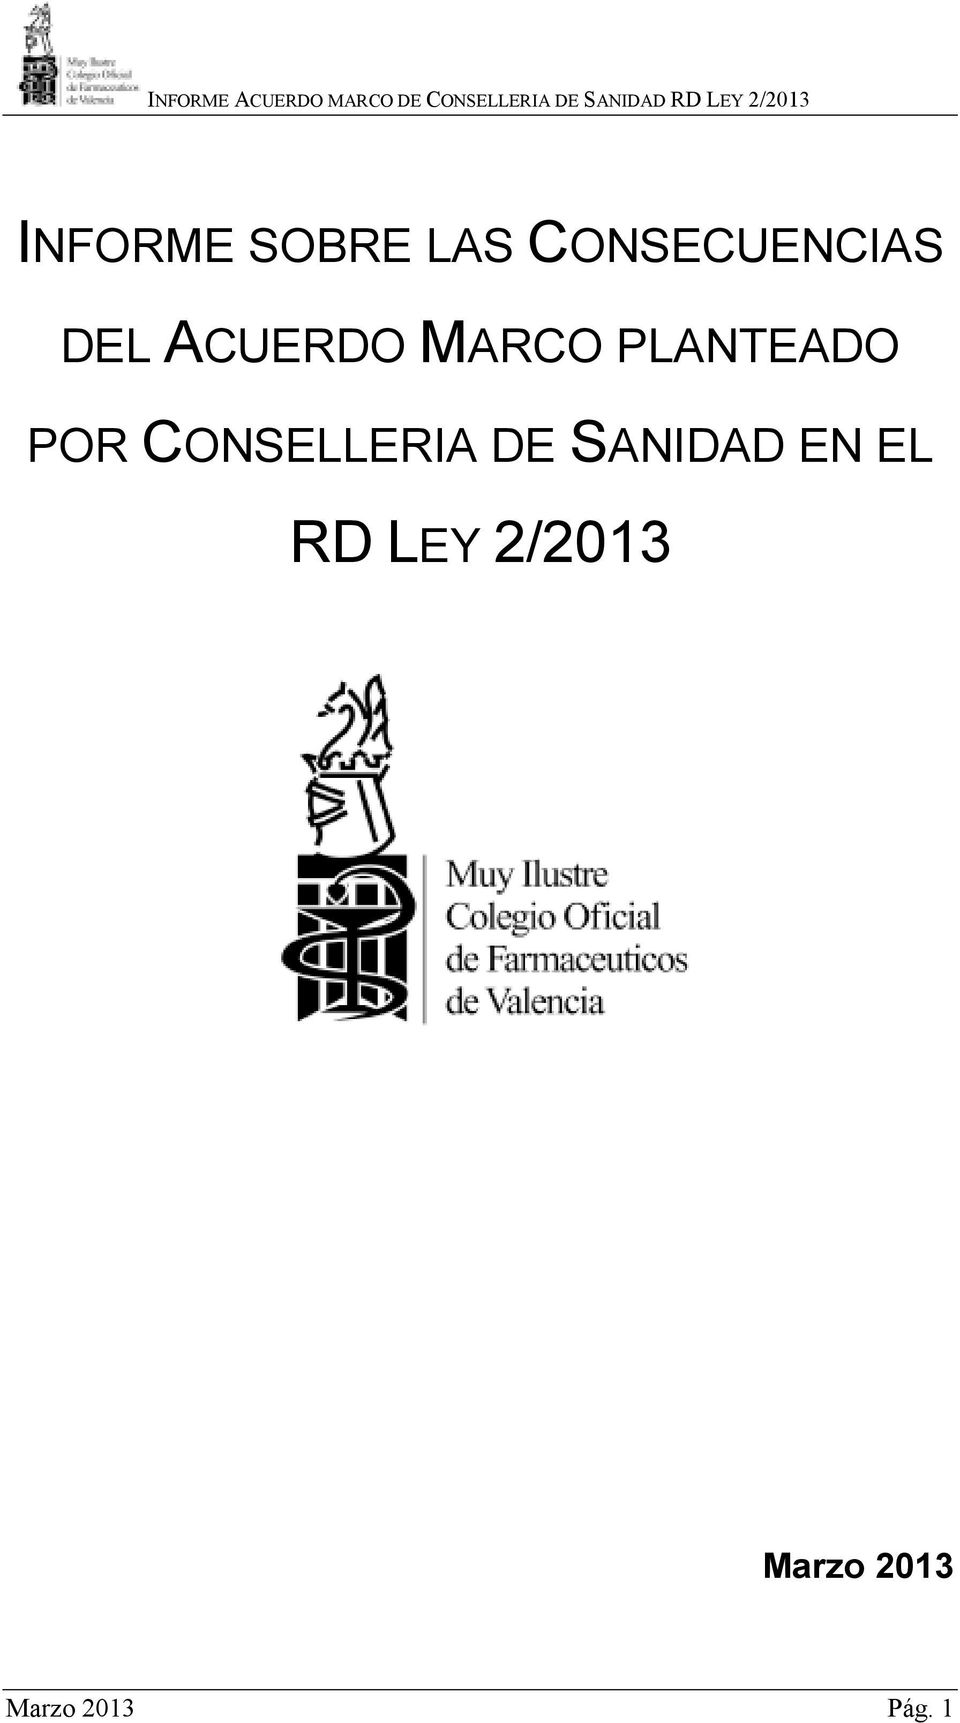 CONSELLERIA DE SANIDAD EN EL RD